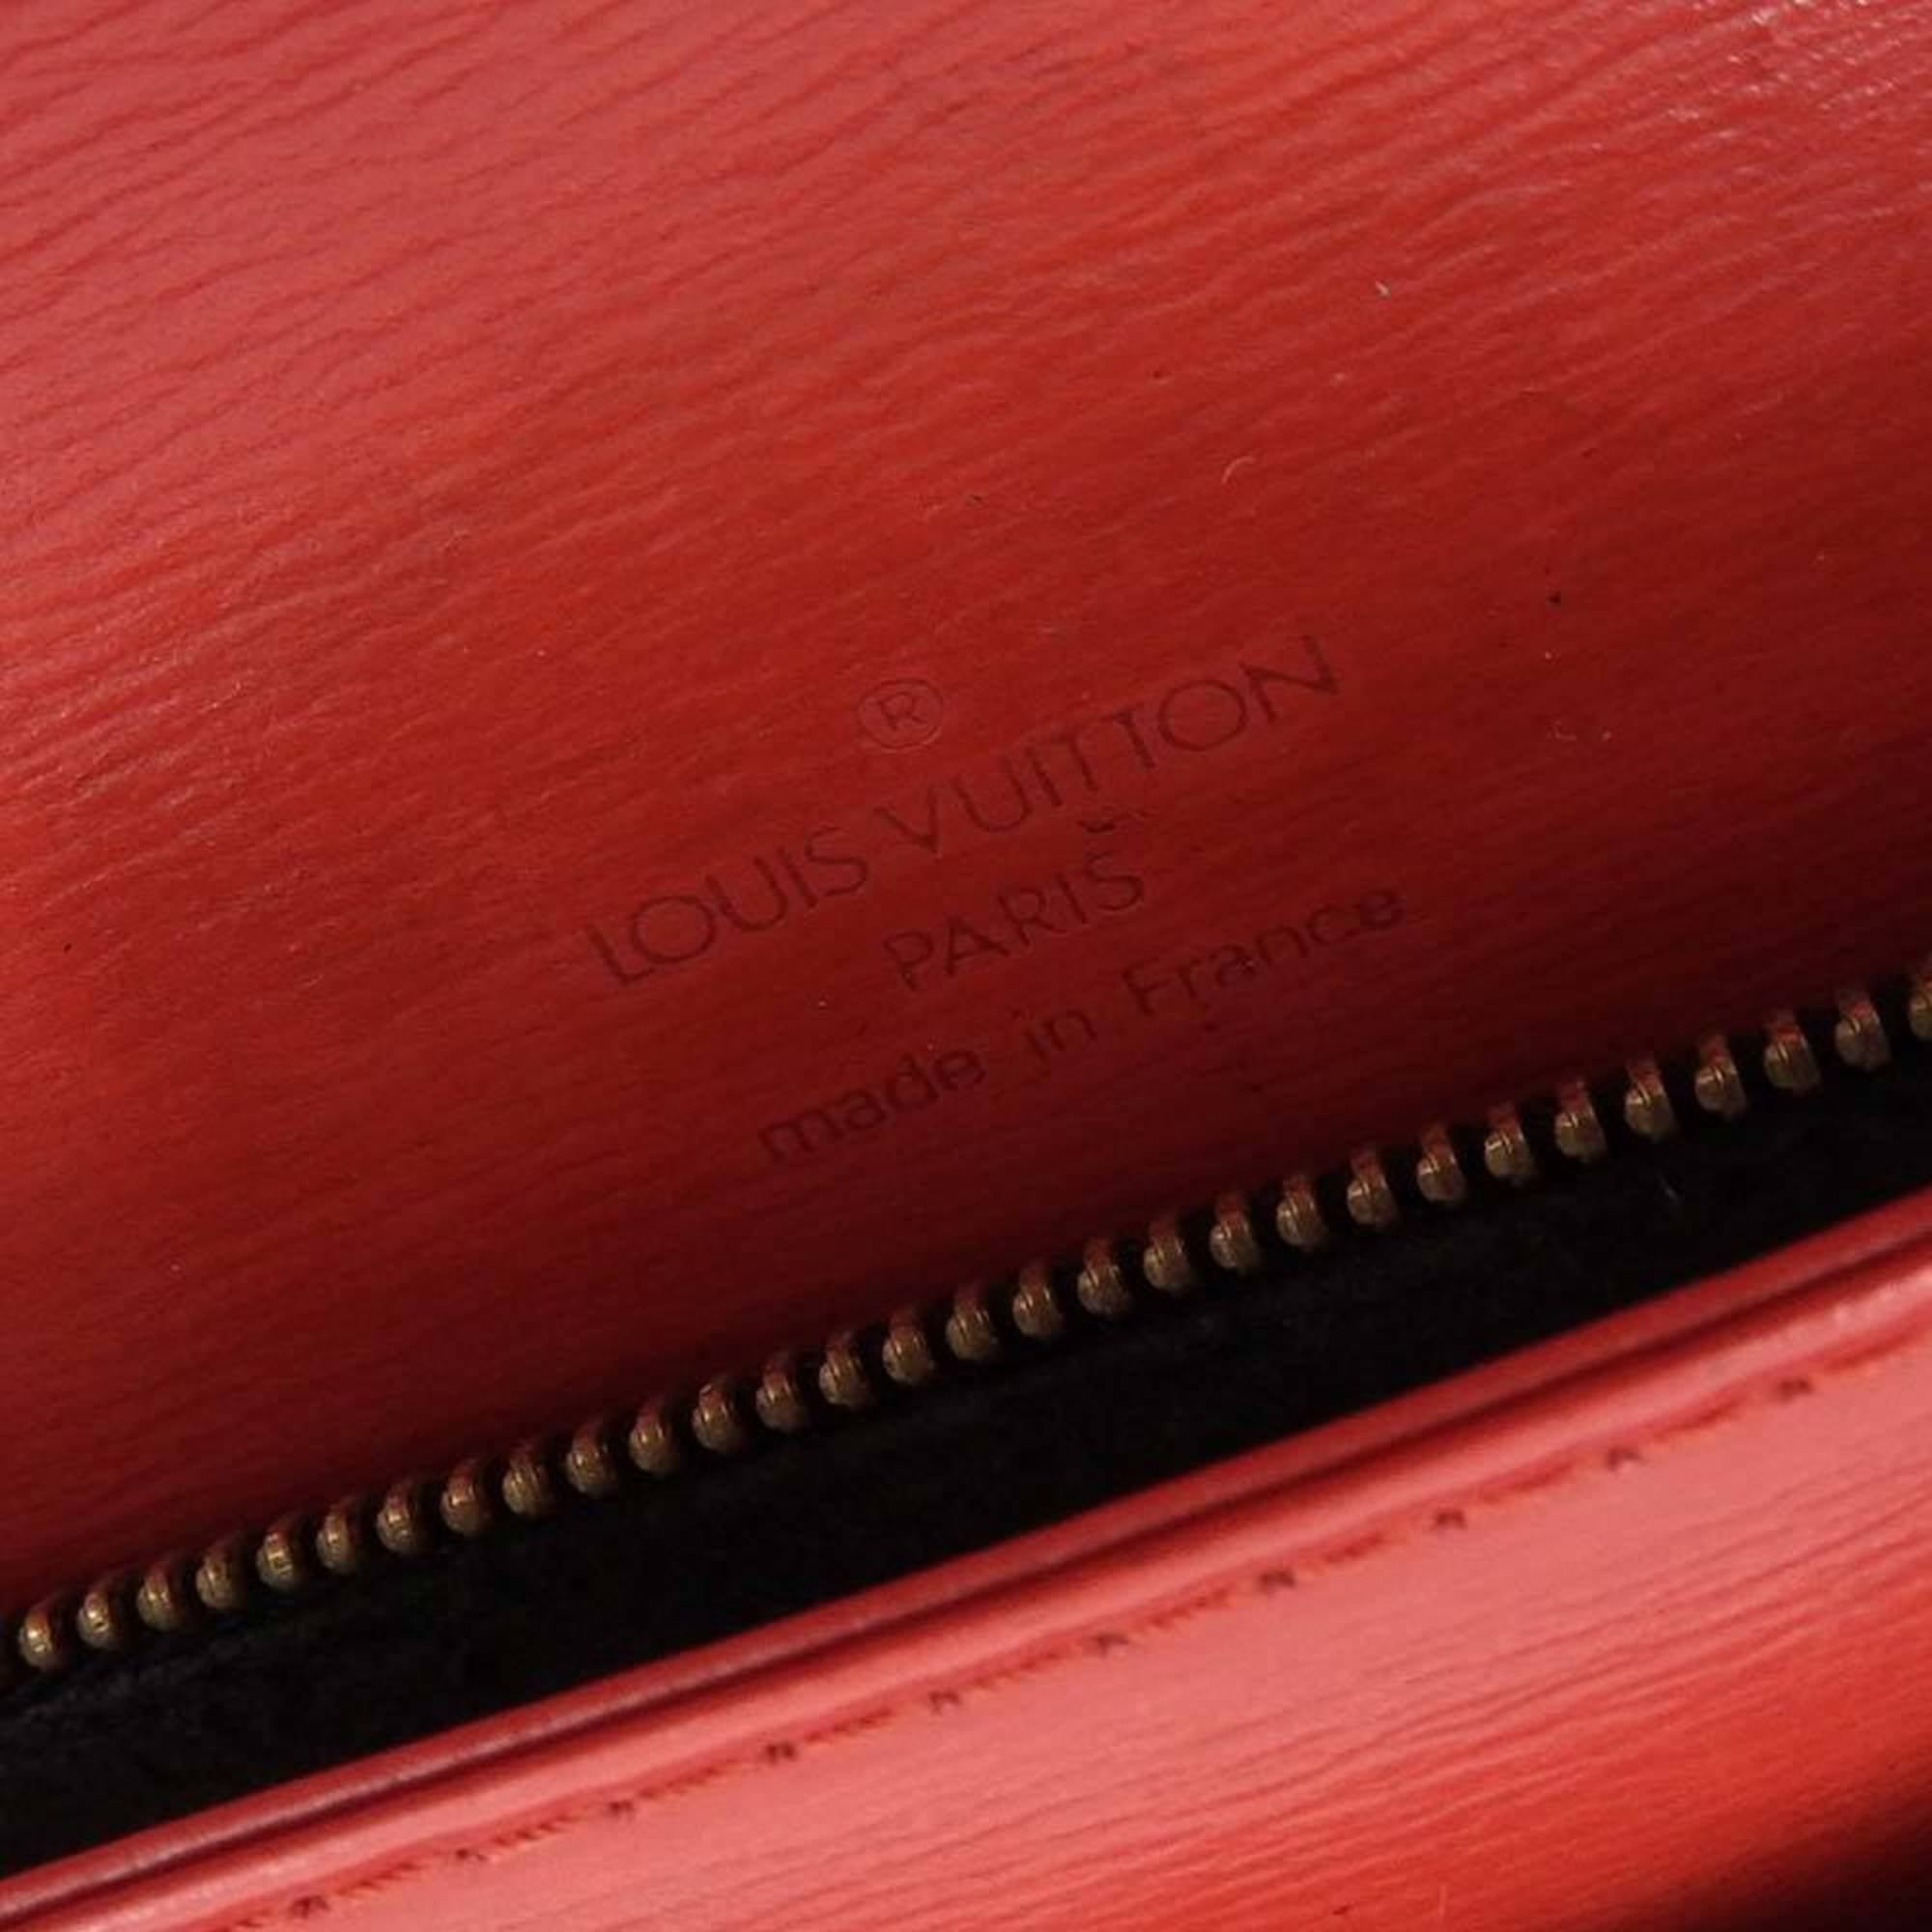 Authenticated used Louis Vuitton Monogram Multicolor Bucket Flange 2006 Limited Noir M40110 Handbag Bag Black Lv0039 Louis Vuitton, Adult Unisex, Size